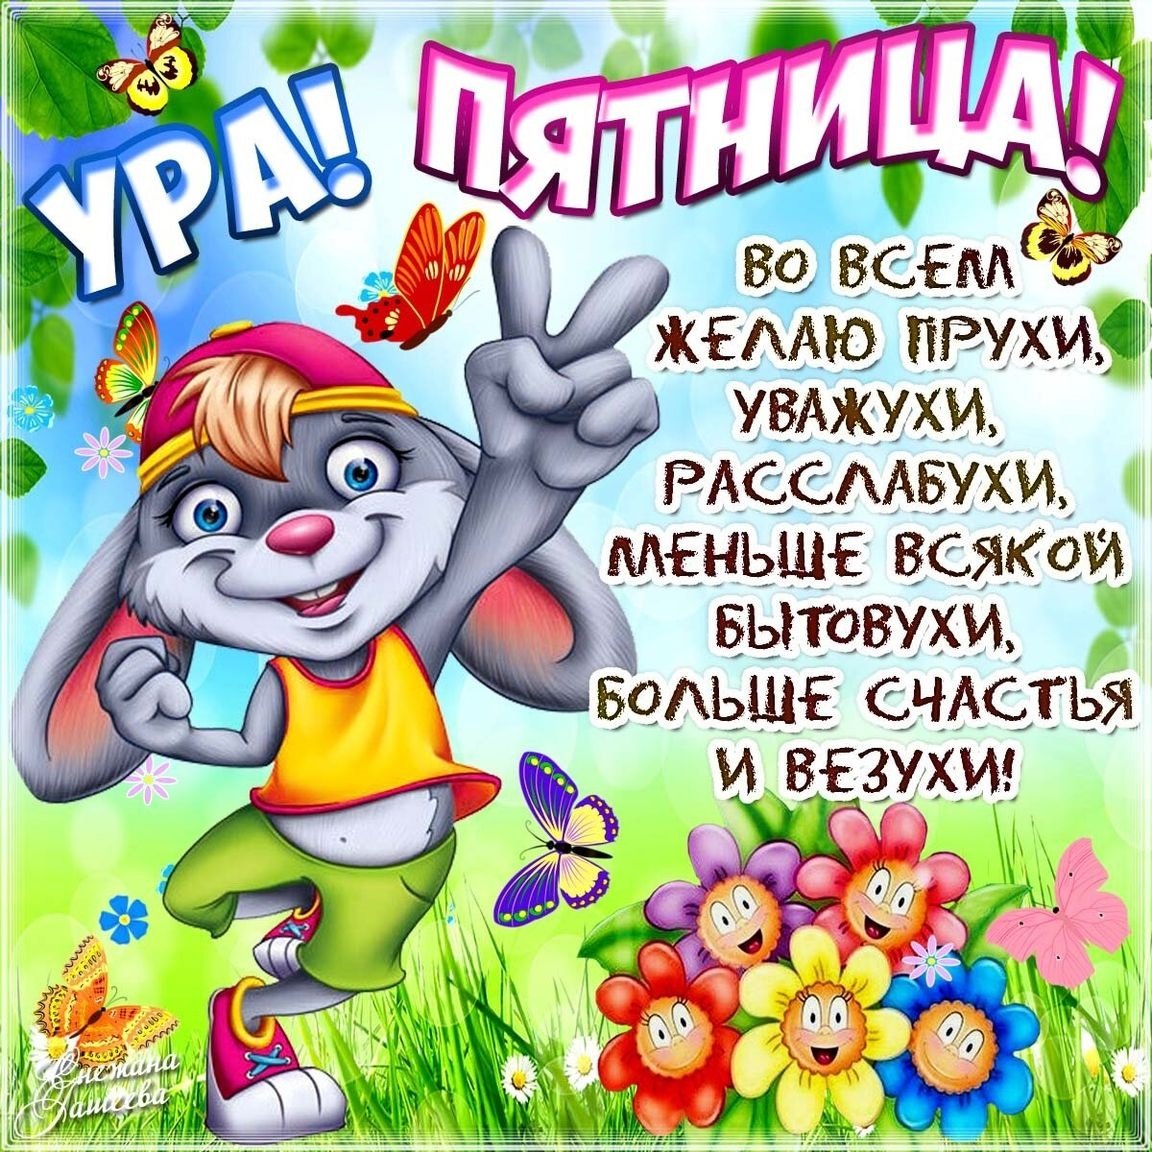 Твой день рождения в пятницу 13 | ВКонтакте